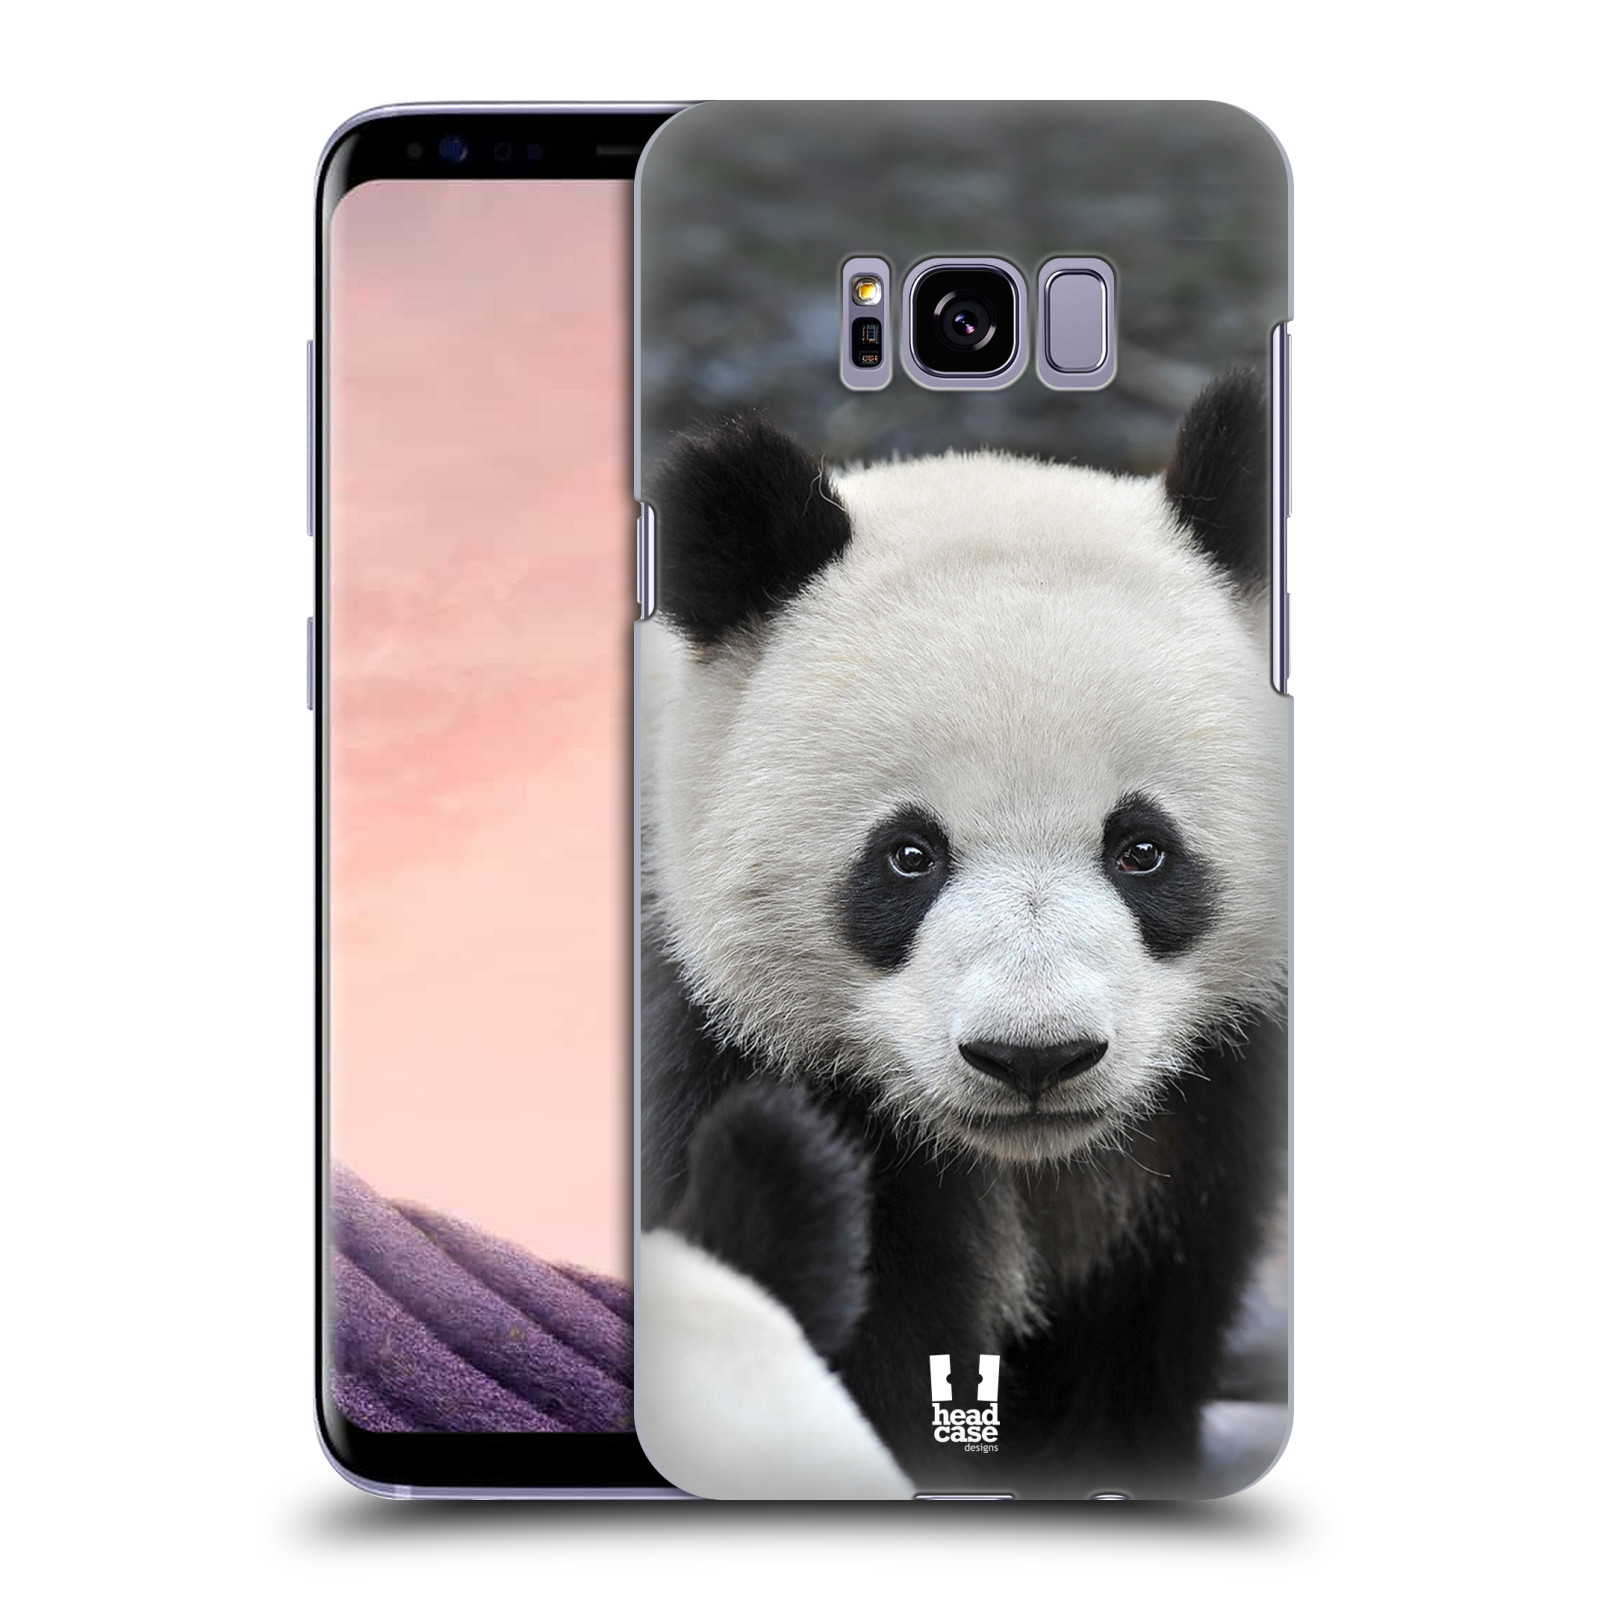 Zadní obal pro mobil Samsung Galaxy S8 PLUS - HEAD CASE - Svět zvířat medvěd panda